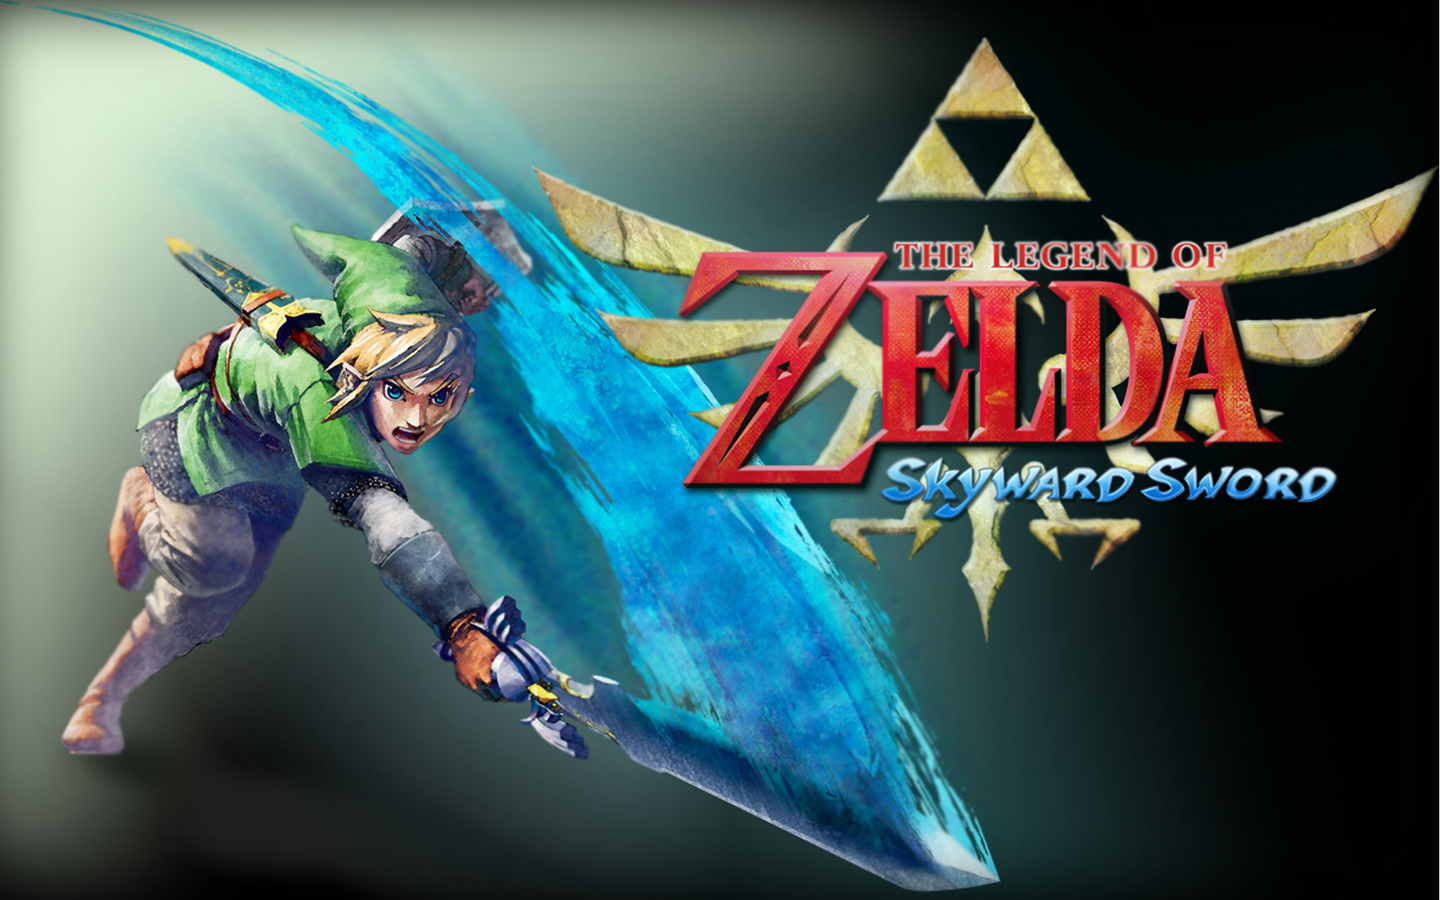 The-Legend-of-Zelda-Skyward-Sword-the-legend-of-zelda-skyward-sword ...